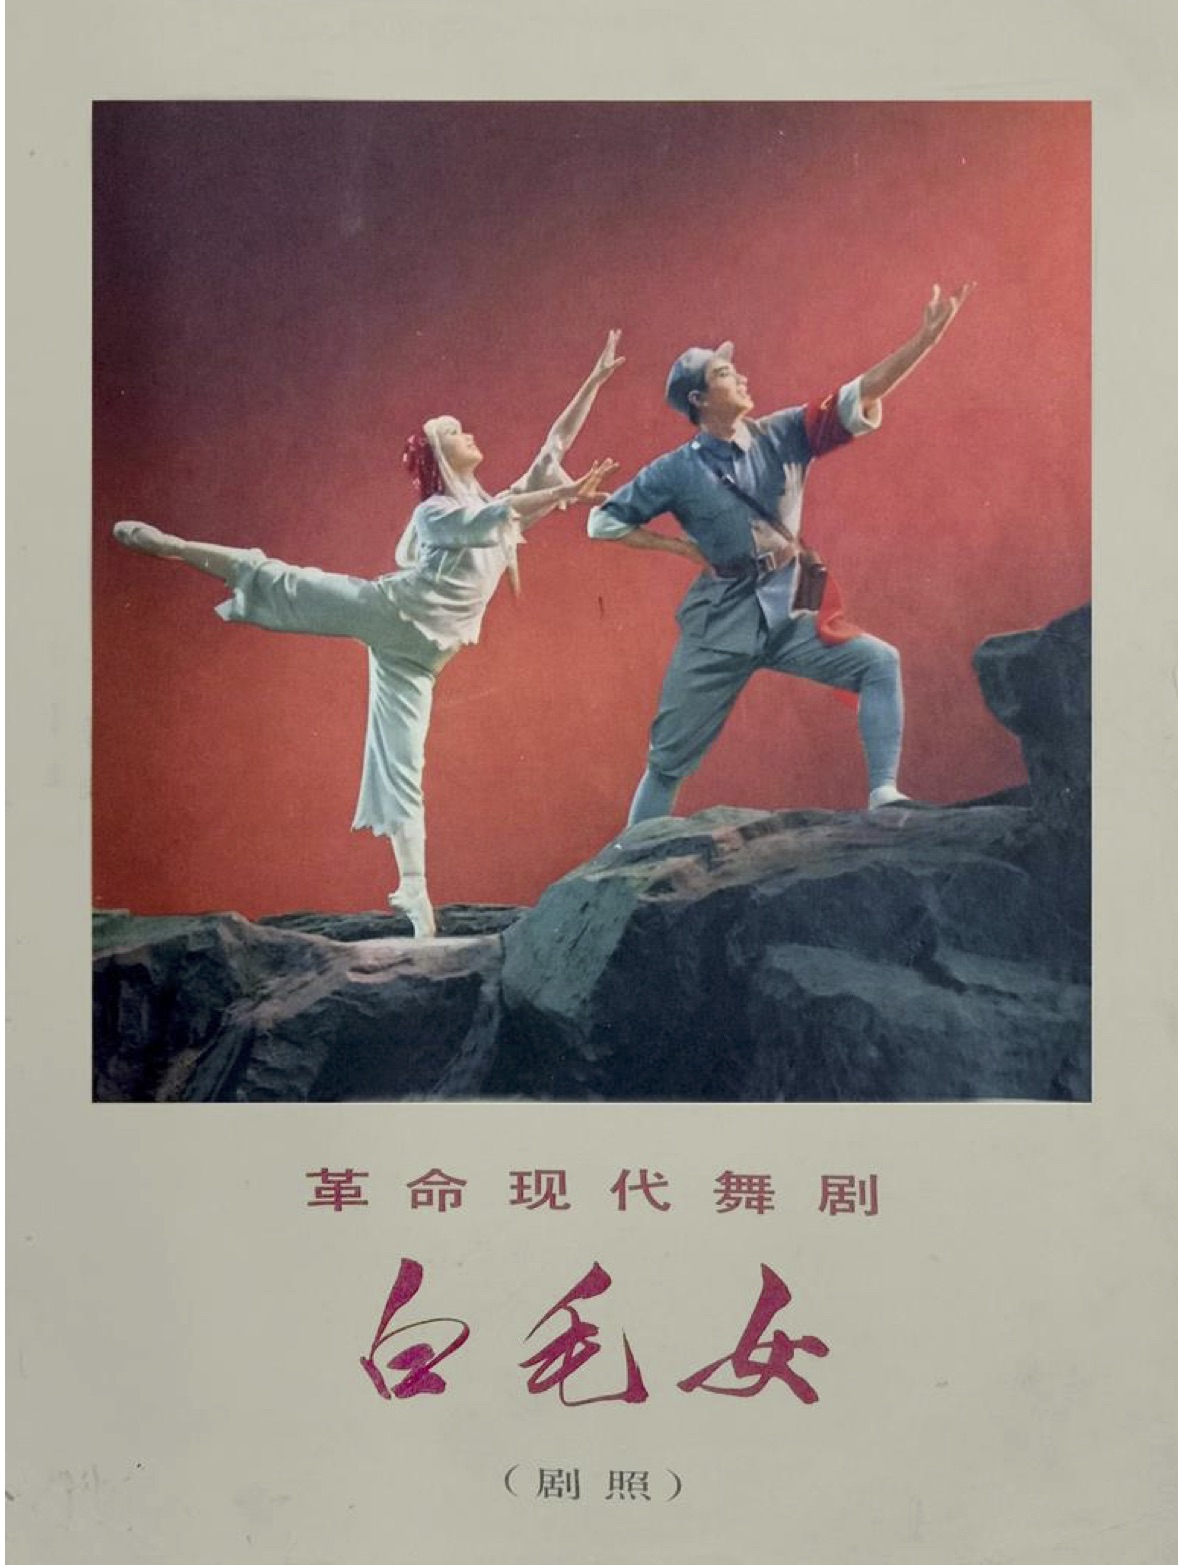 The 1965 Shanghai Dance Academy version.